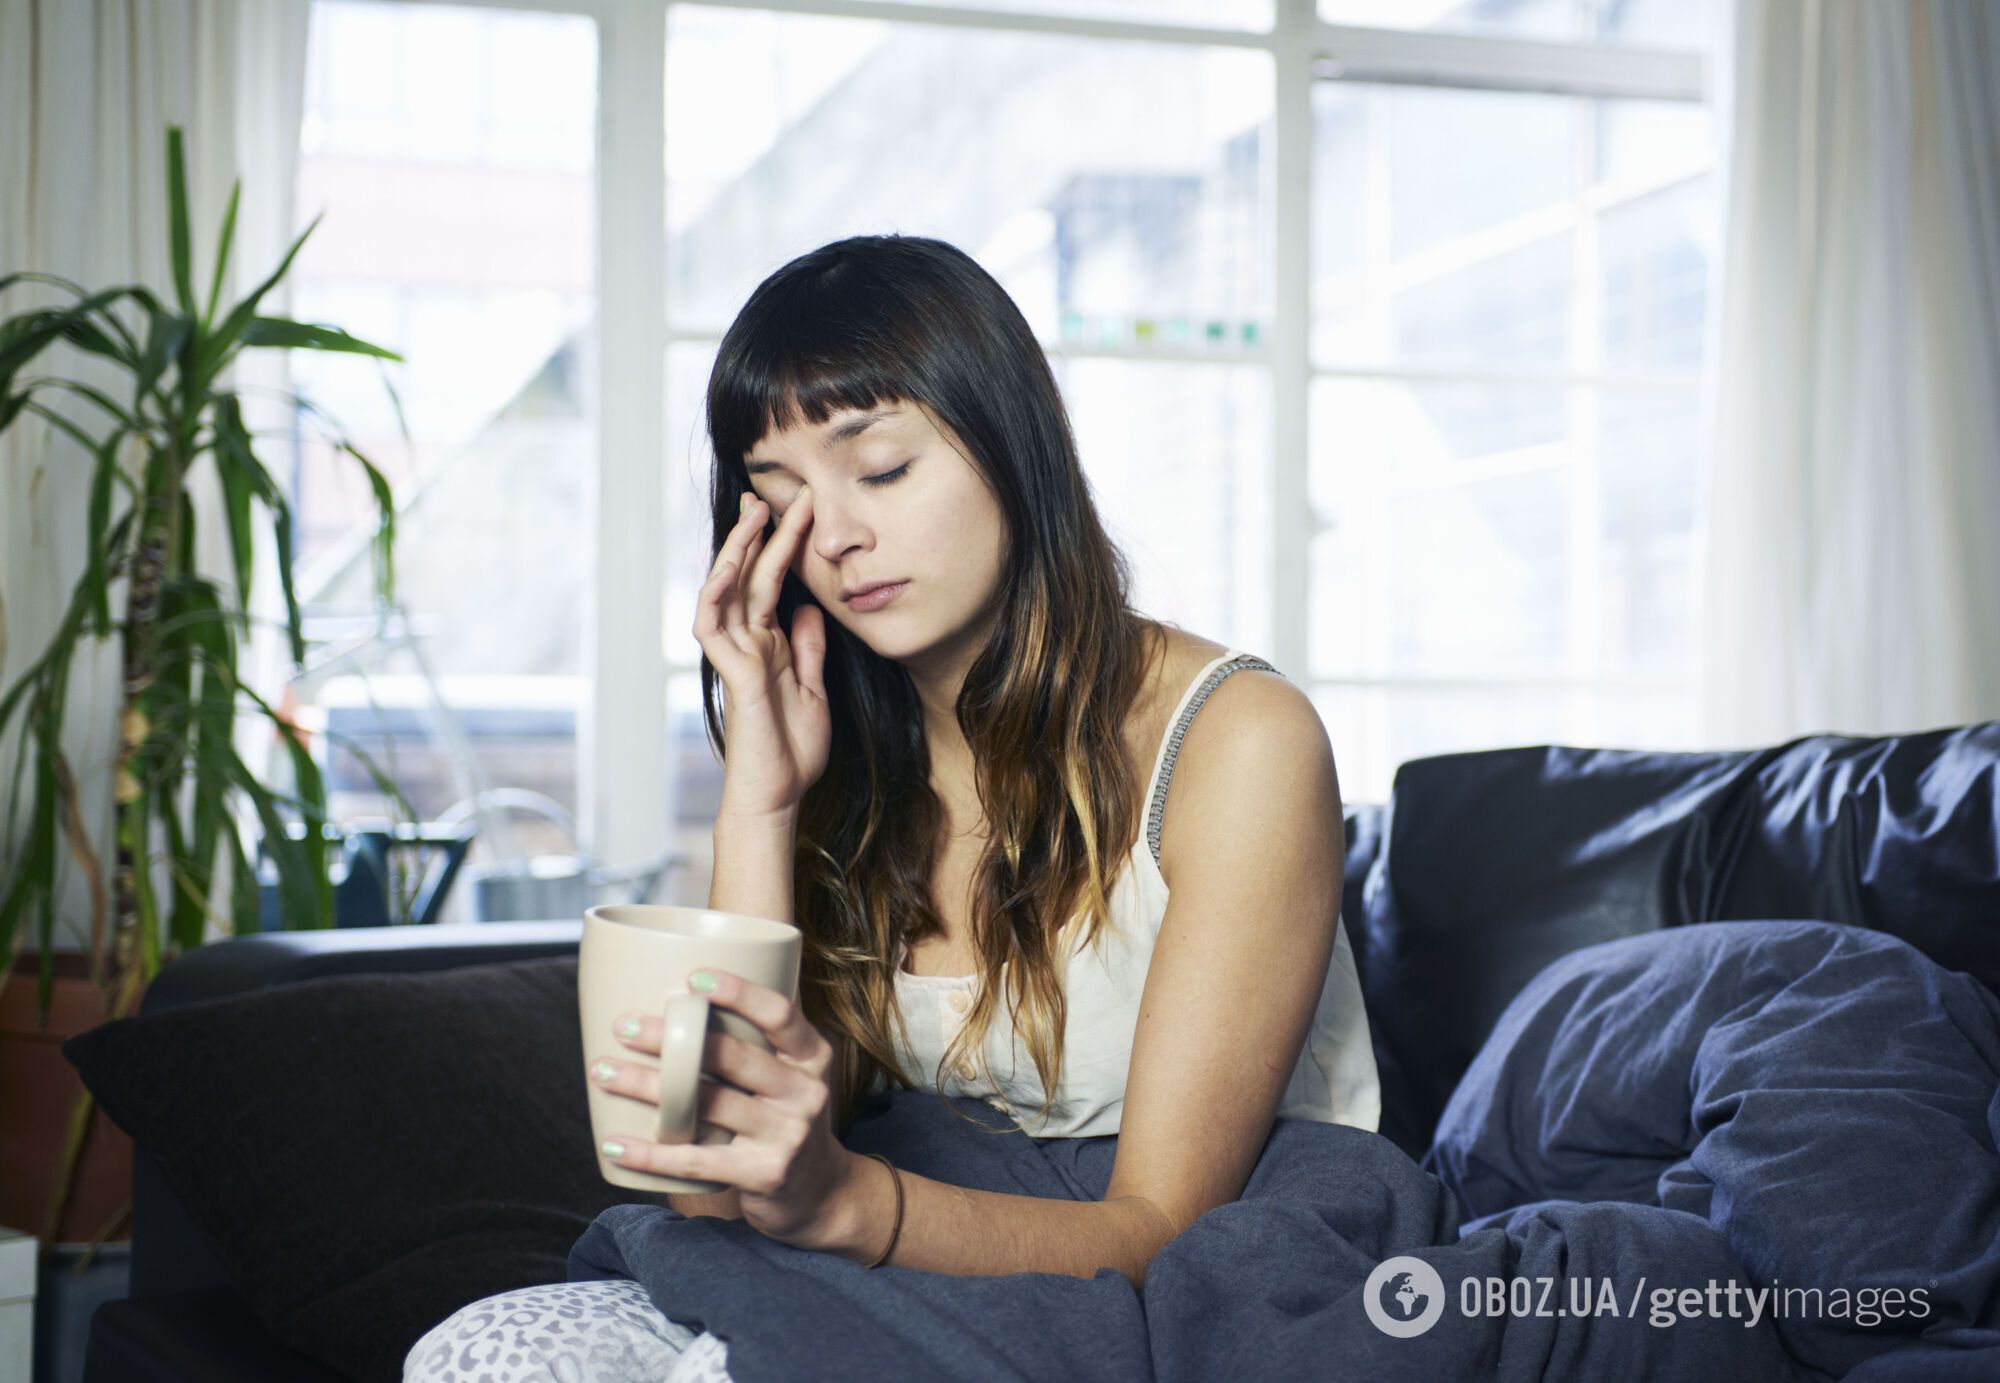 Вредные привычки, аллергия и плач перед сном плохо влияют на внешний вид утром